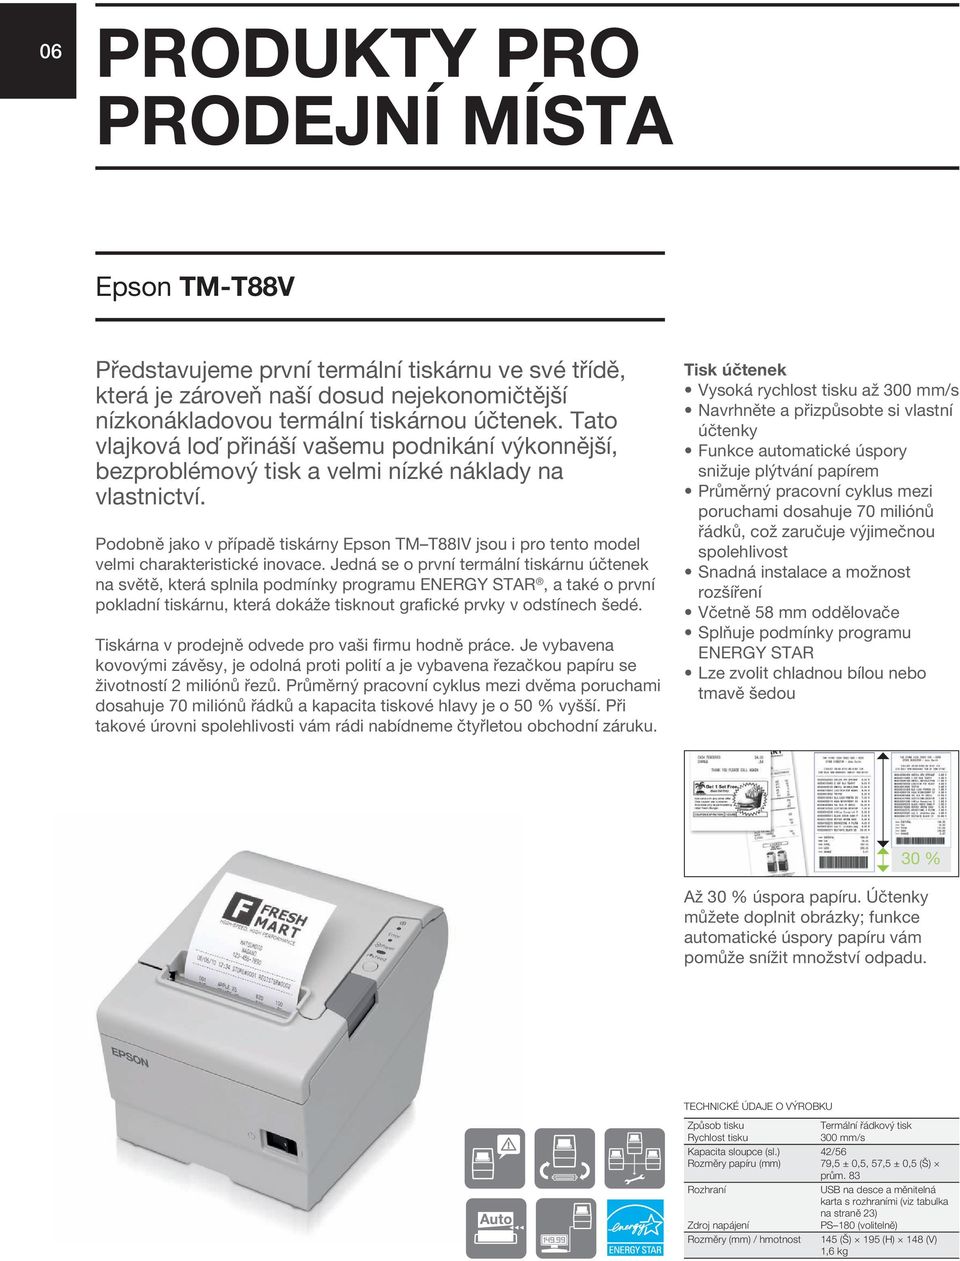 Podobně jako v případě tiskárny Epson TM T88IV jsou i pro tento model velmi charakteristické inovace.